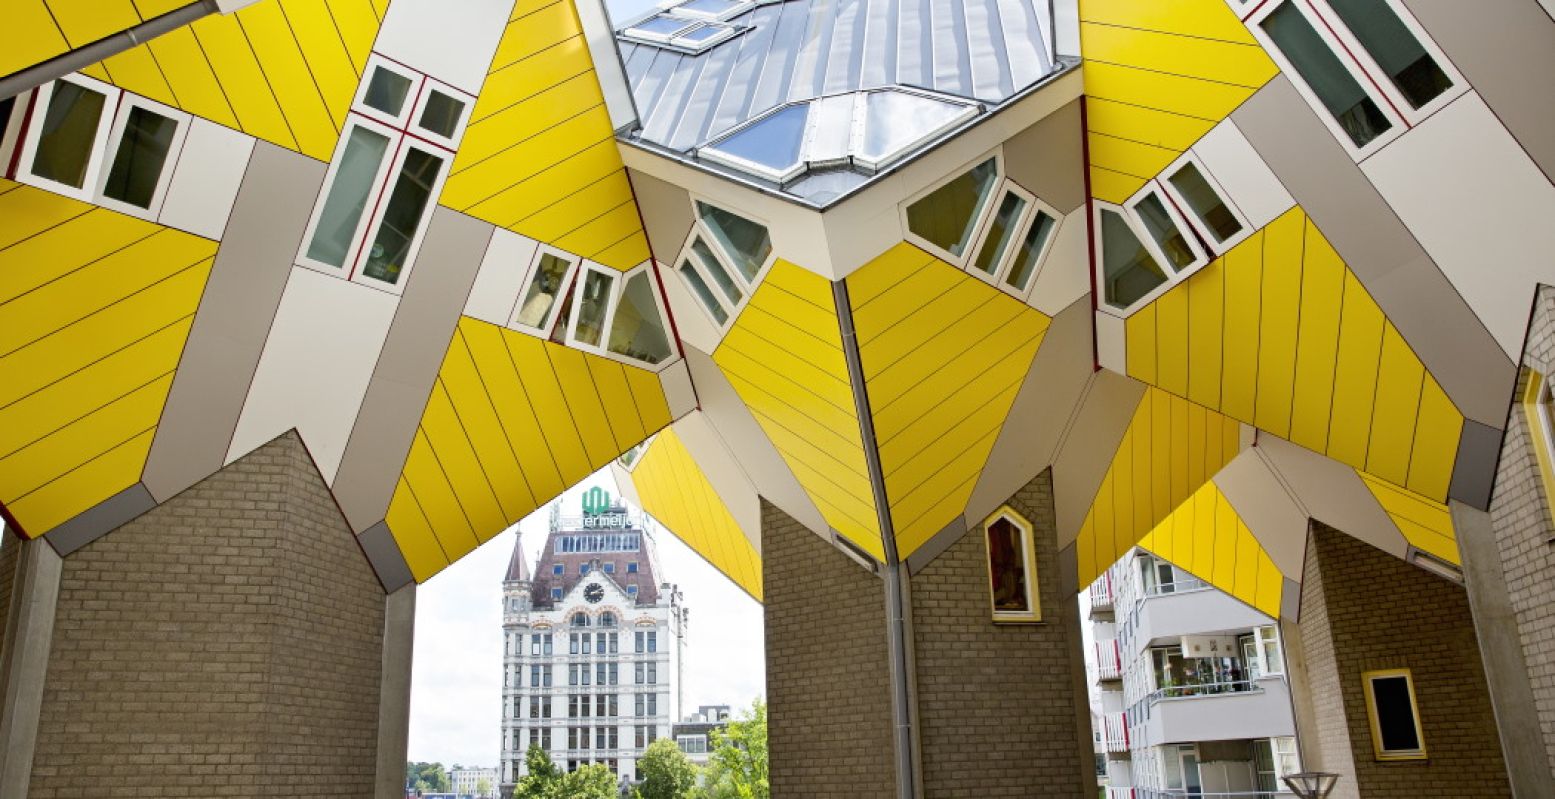 De Kubuswoningen ontworpen door Piet Blom en het Witte Huis ontworpen door Willem Molenbroek. Foto: Rotterdam Make It Happen © Iris van den Broek.